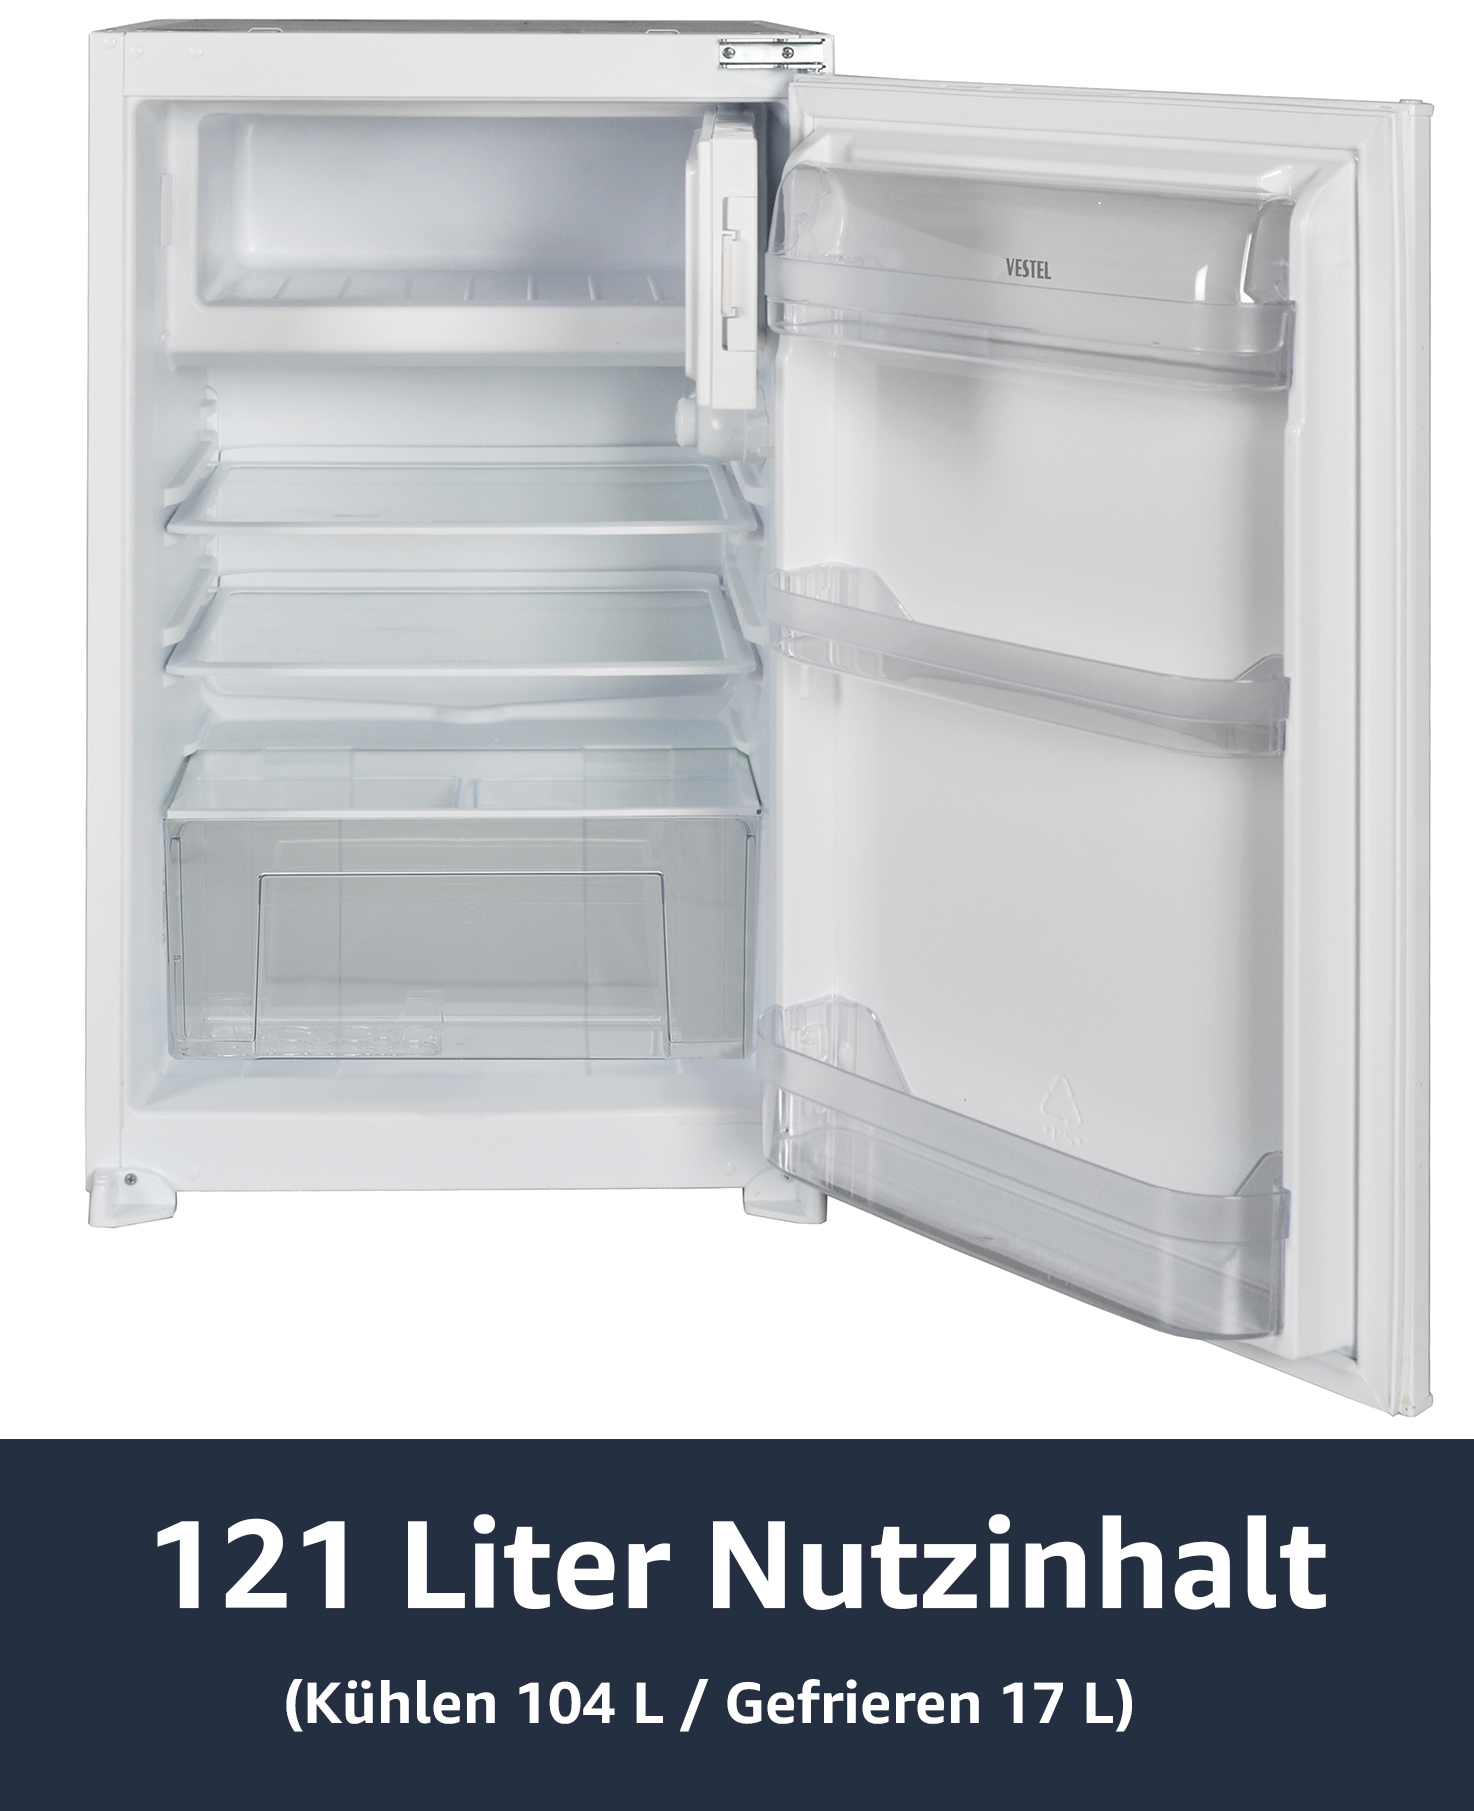 VESTEL VEKF2115 Einbaukühlschrank (F, 875 mm hoch, Weiß)